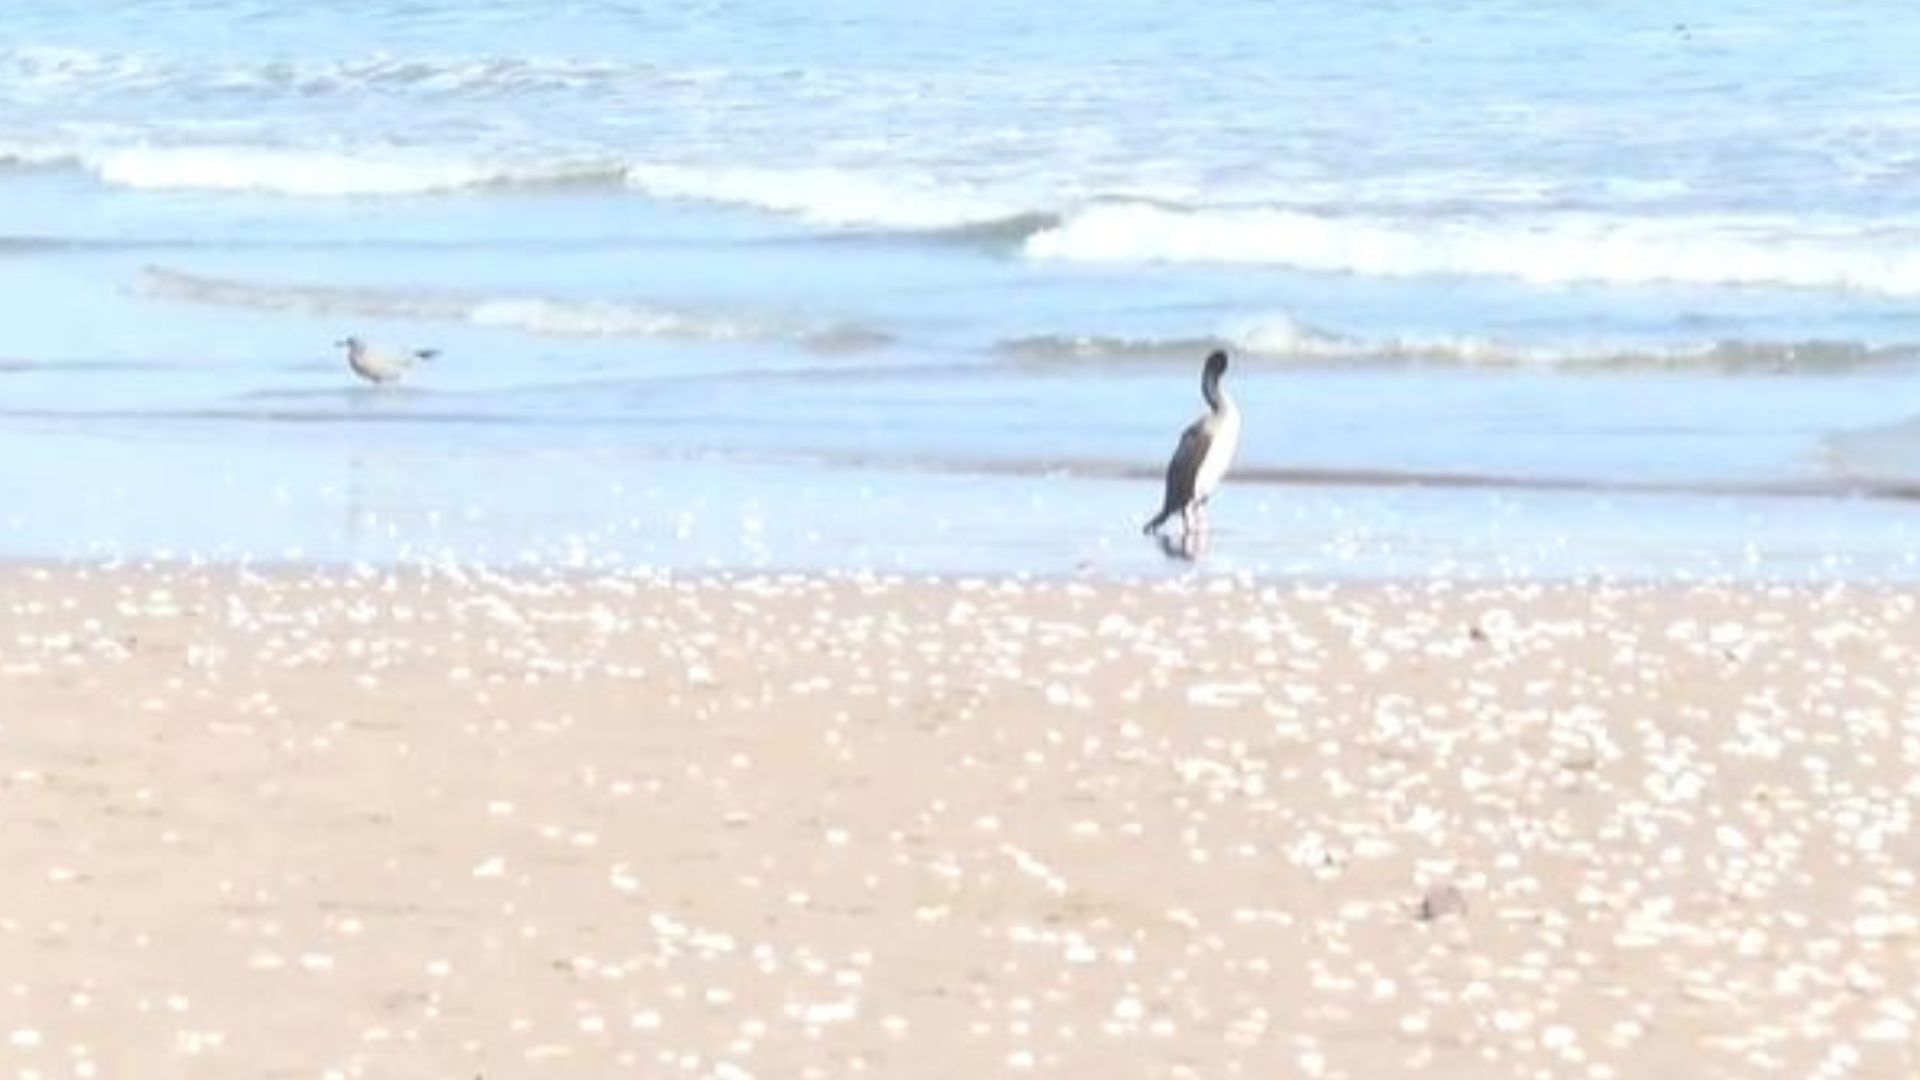 Preocupación tras misteriosa aparición de aves muertas en playa chilena